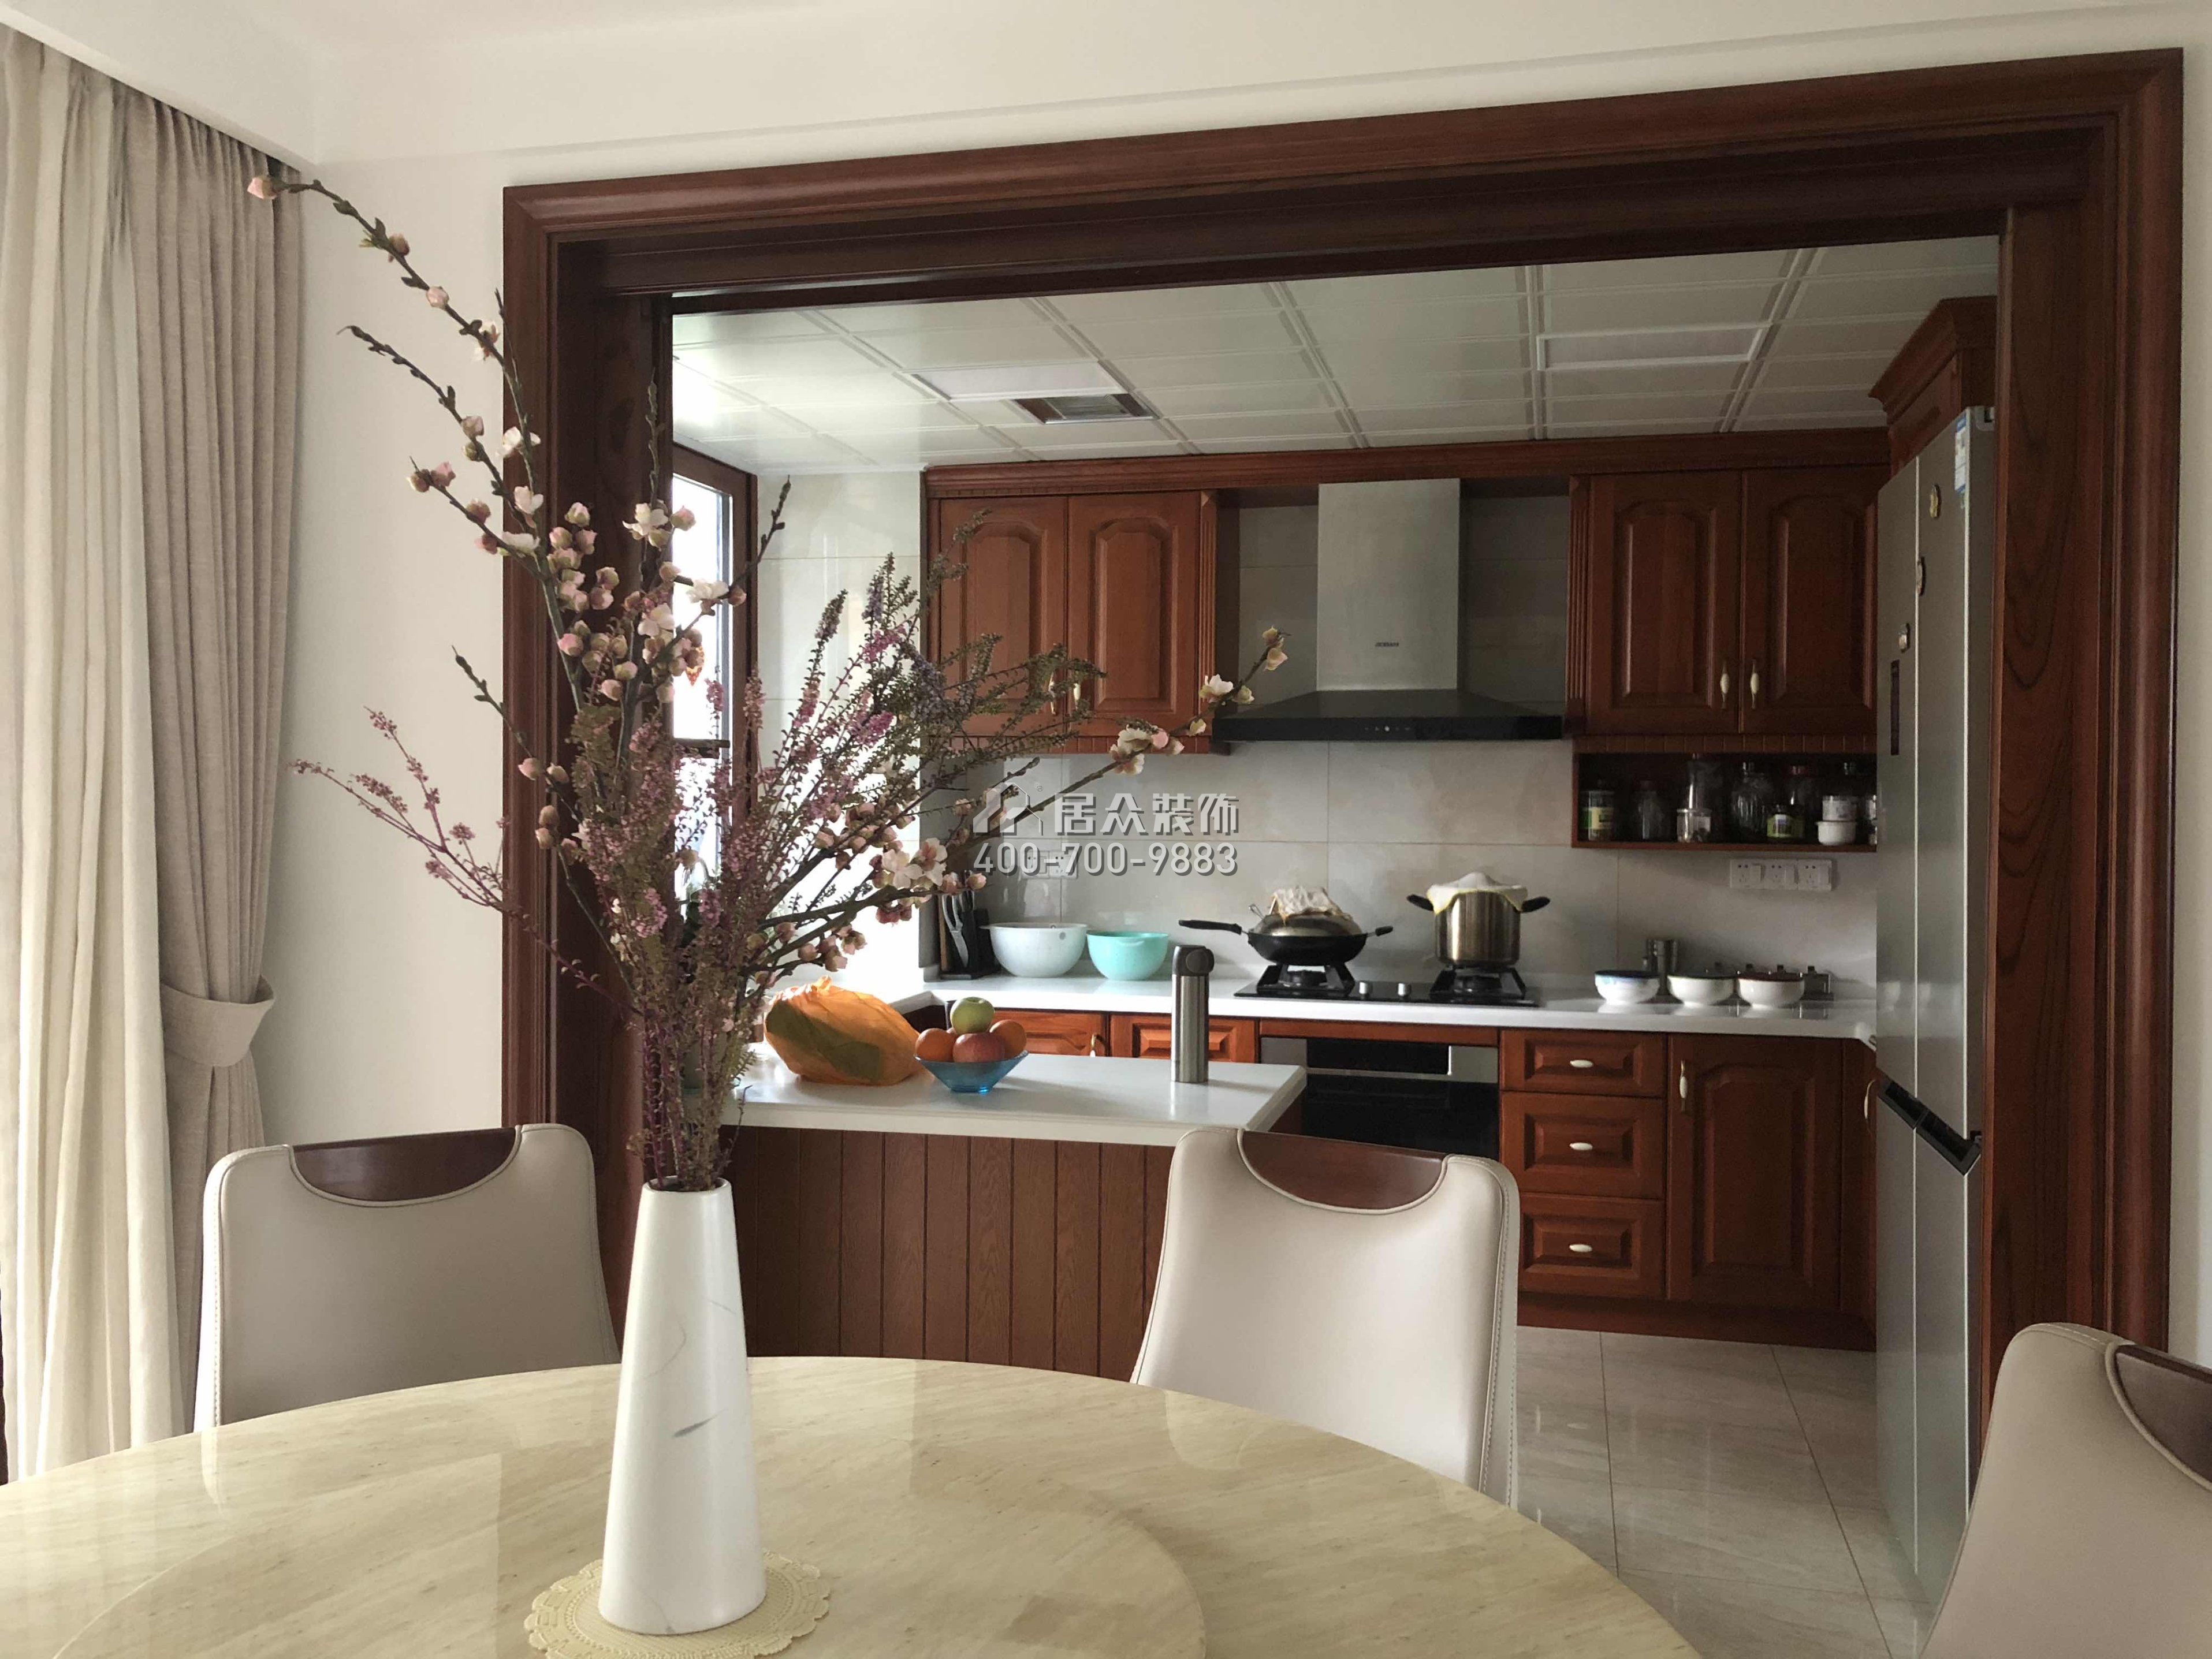 紫金家园160平方米现代简约风格平层户型厨房装修效果图